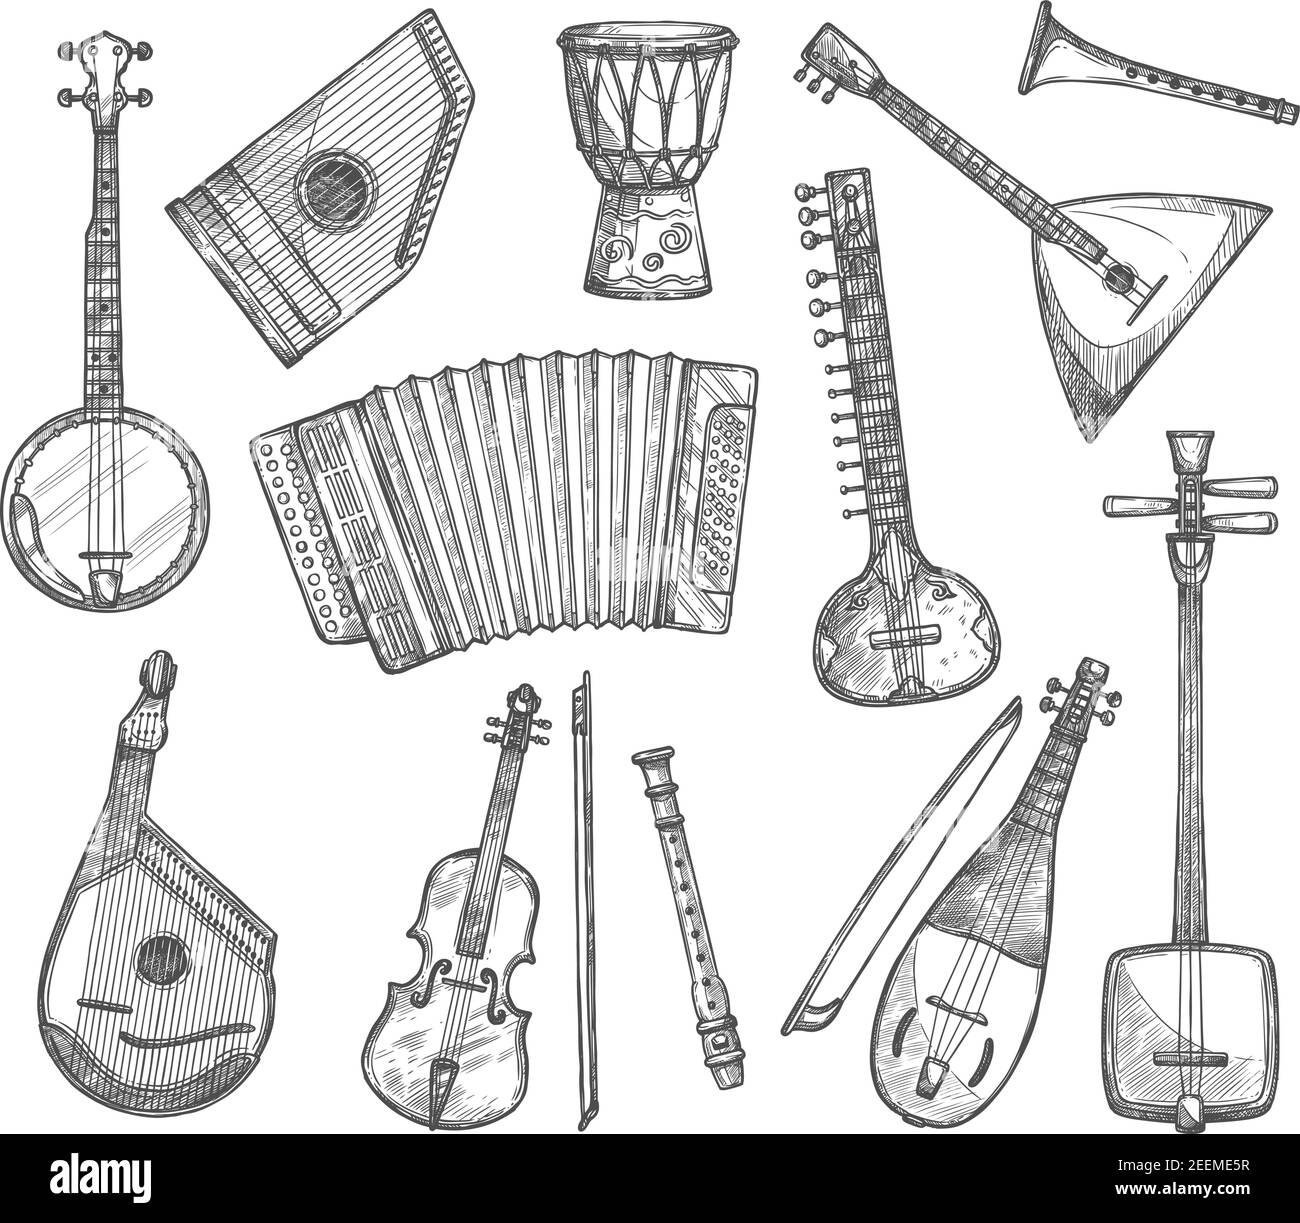 Musikinstrumente Vektor Skizzen Symbole. Vector isolierte Banjo-Gitarre, ethnische Jembe Ledertrommel, Balalaika Zither und Bouzuki, Geige Geige oder Flöte Stock Vektor